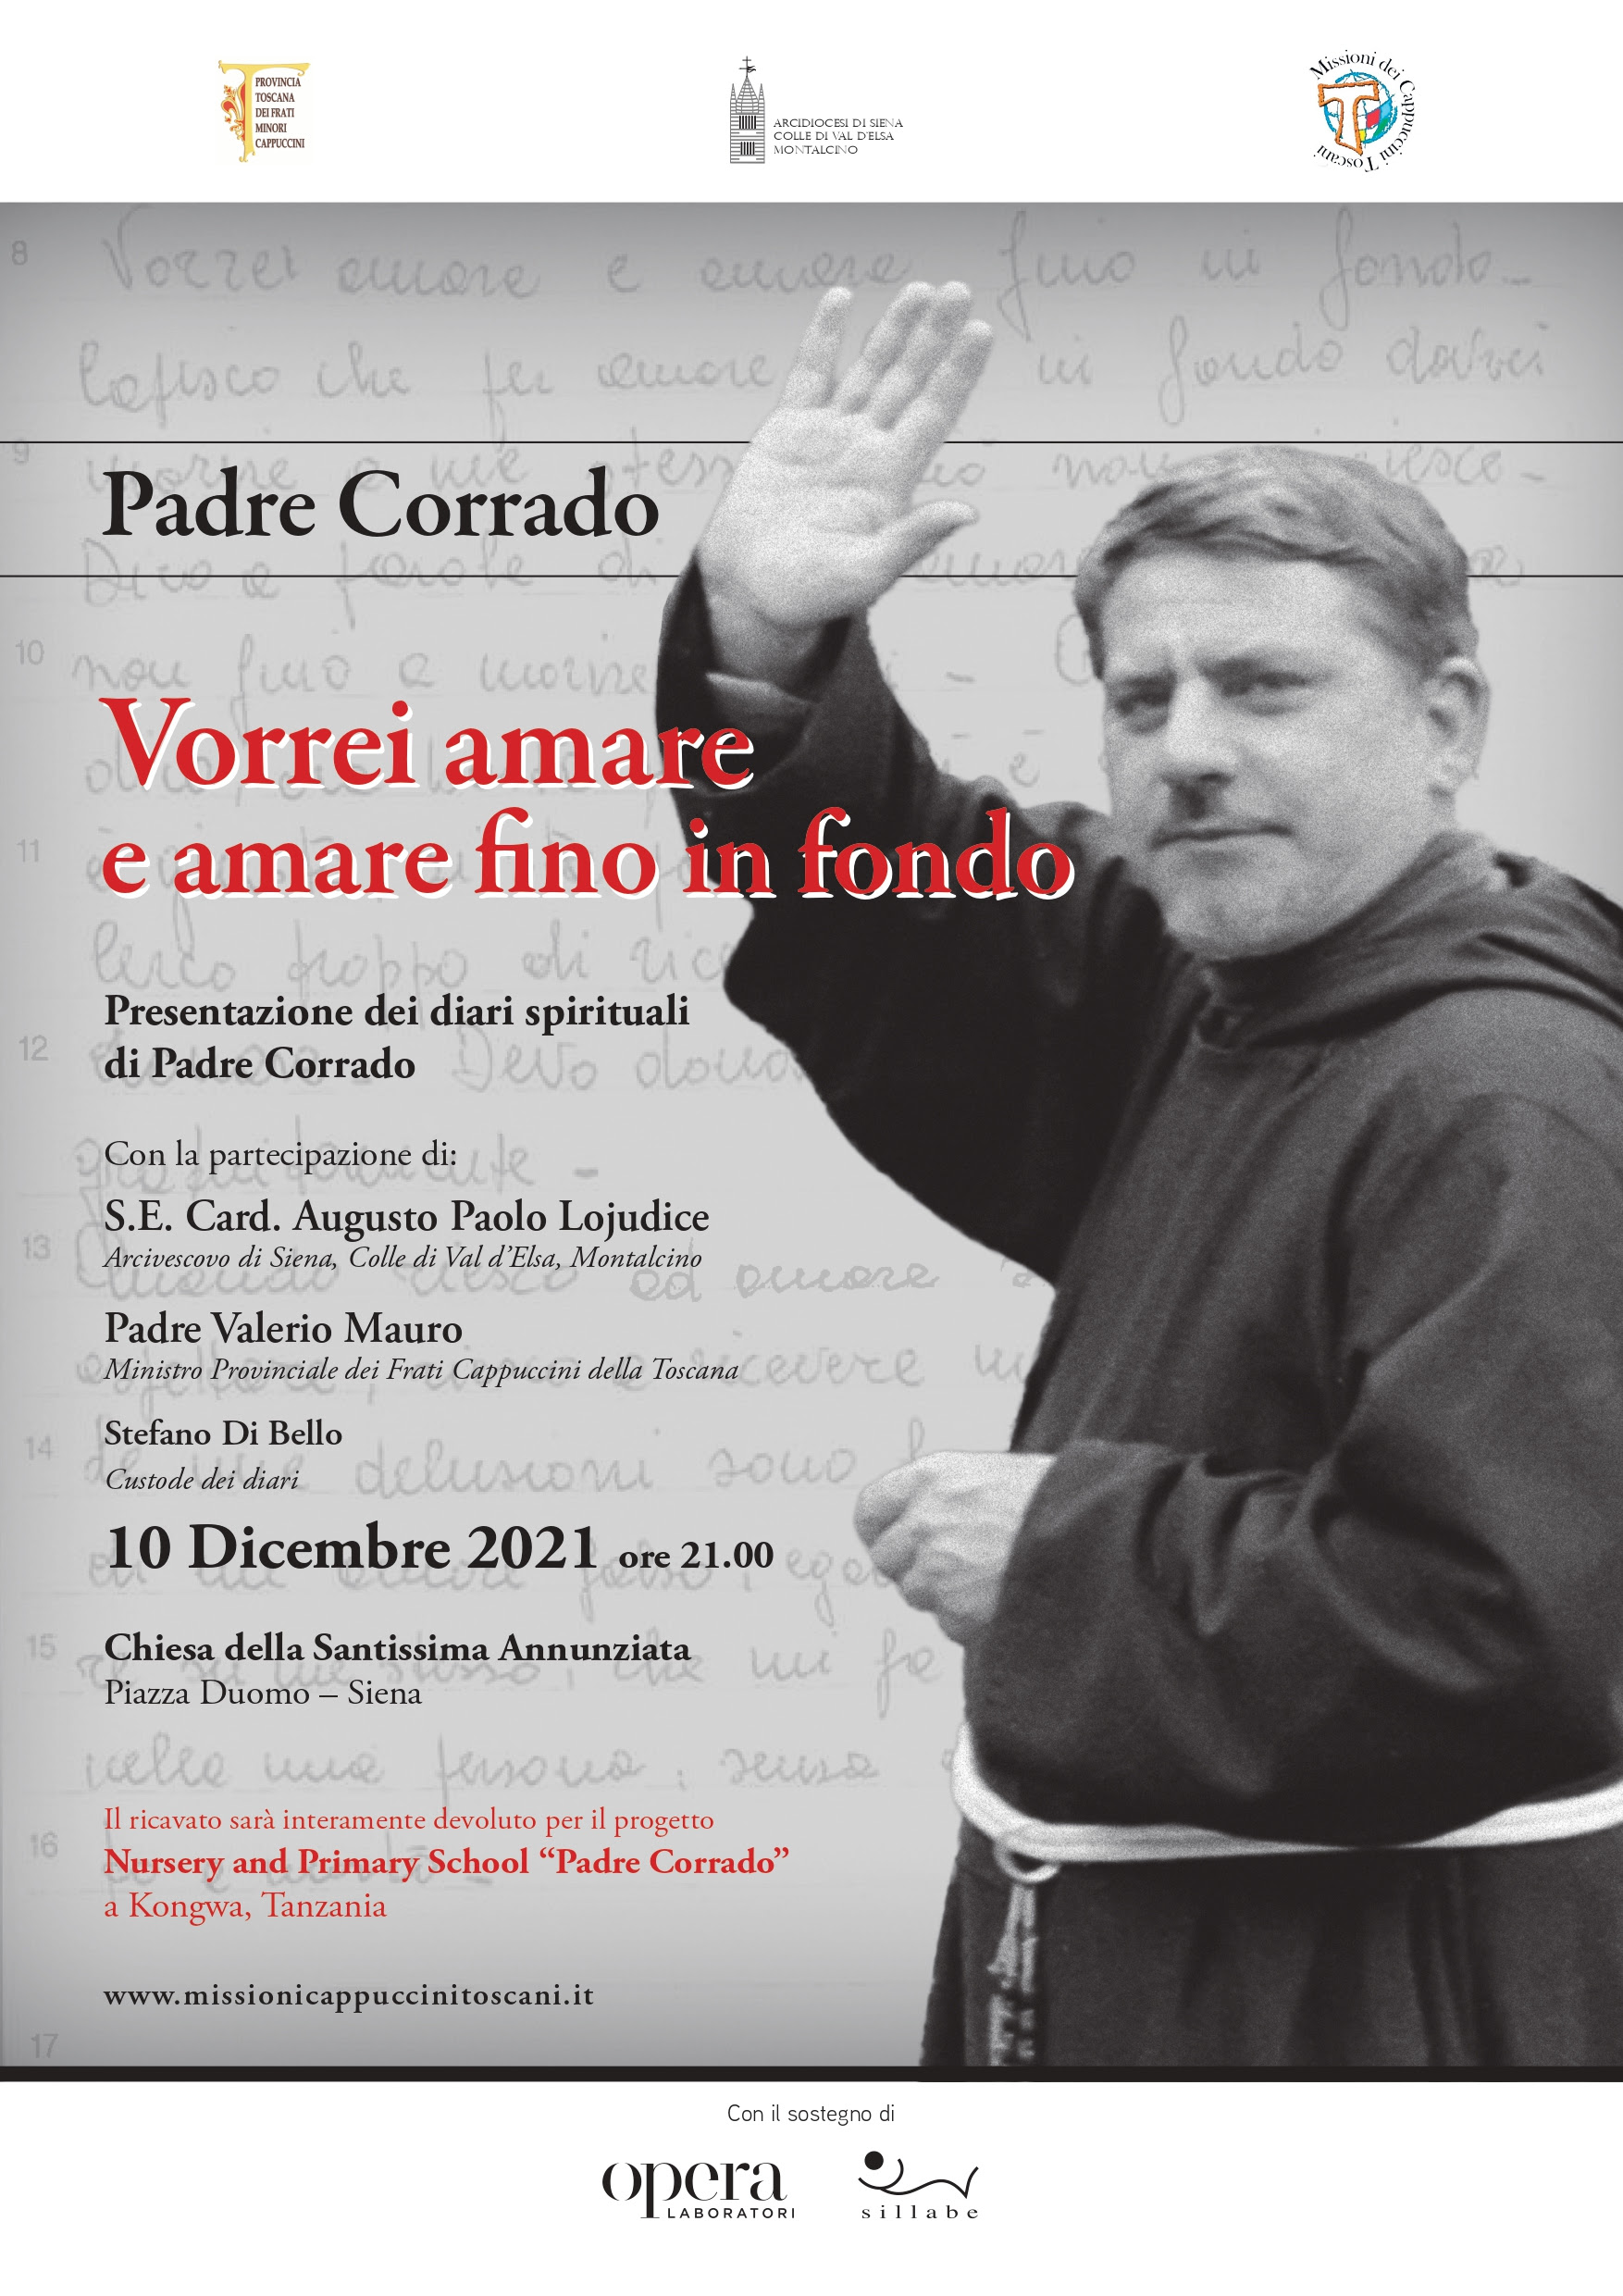 Padre Corrado - INVITO.jpg